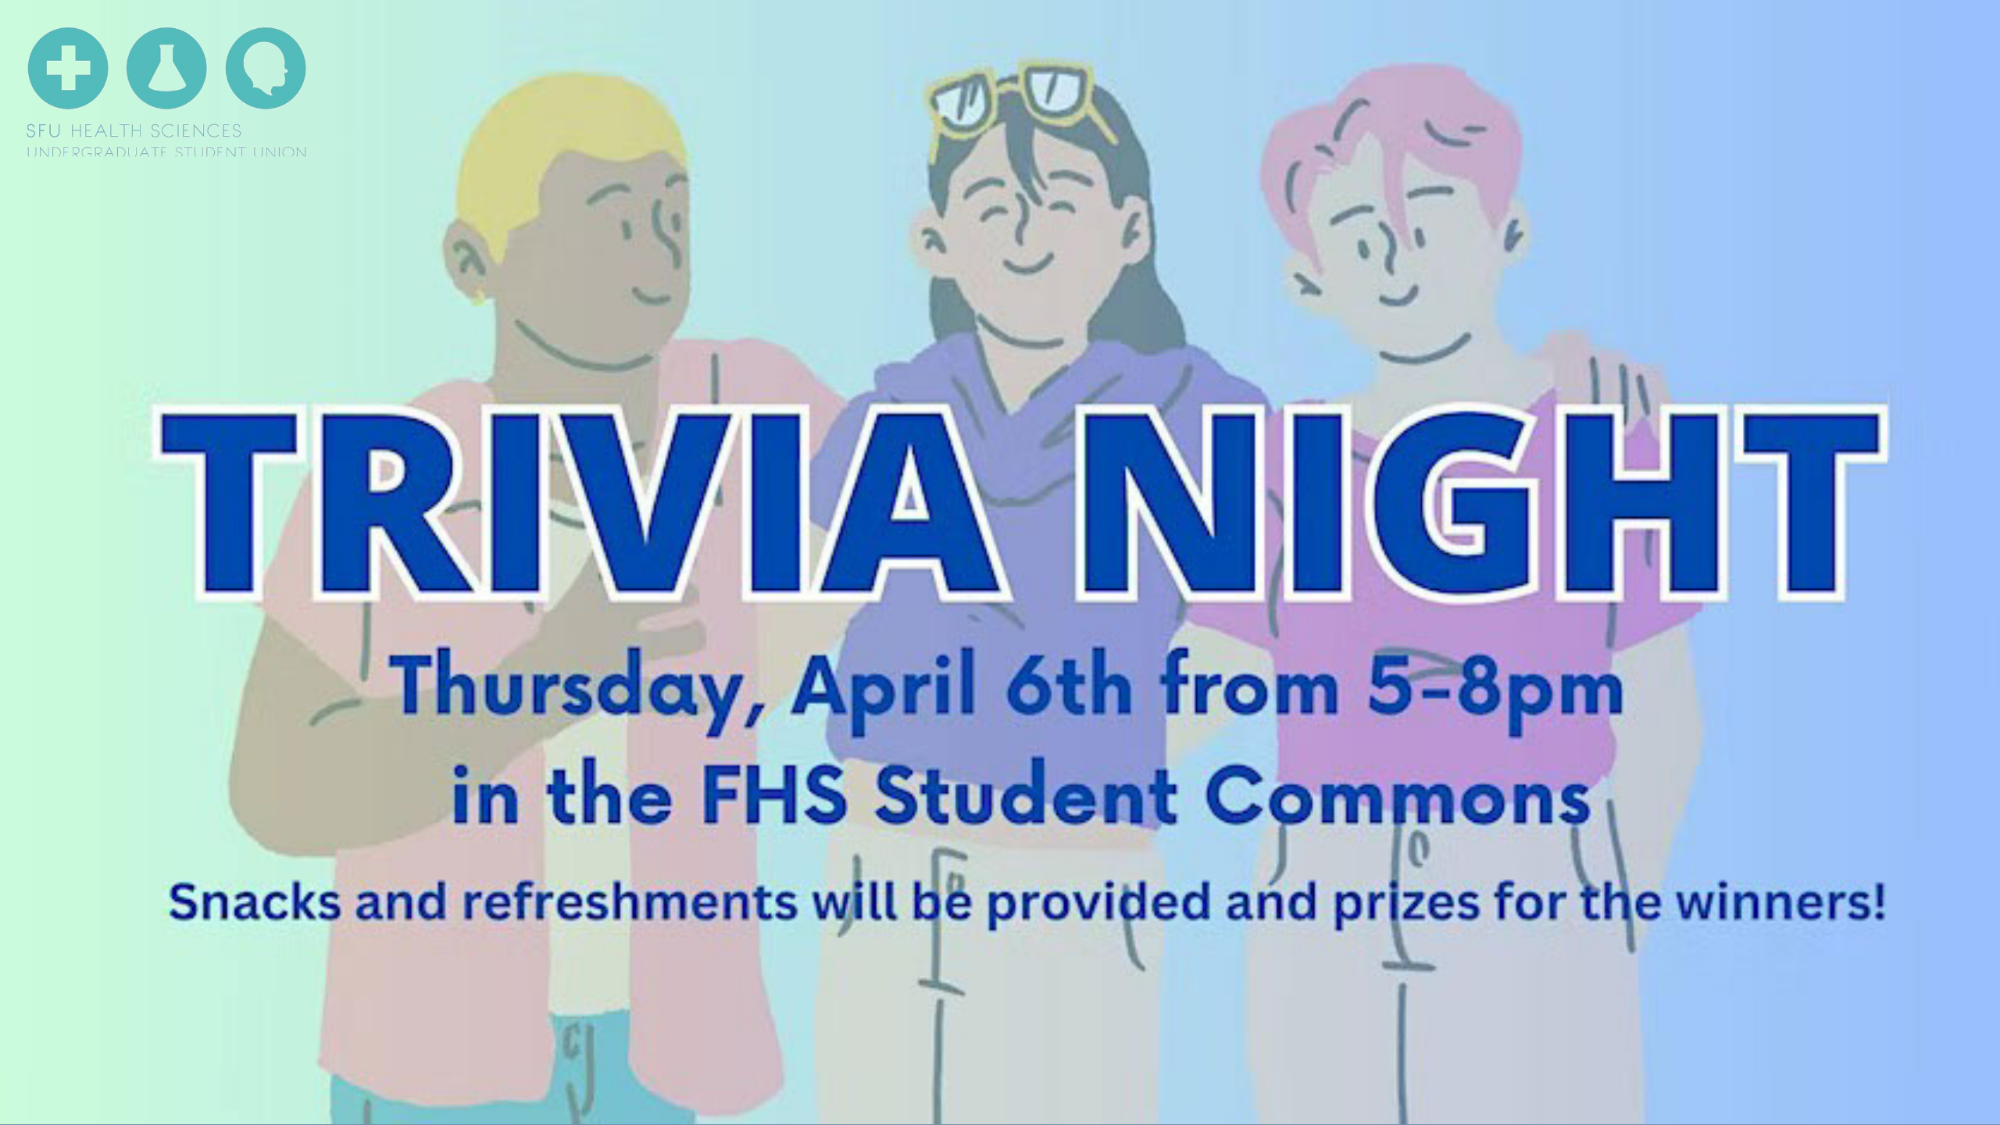 Thursday, April 6: HSUSU Trivia Night